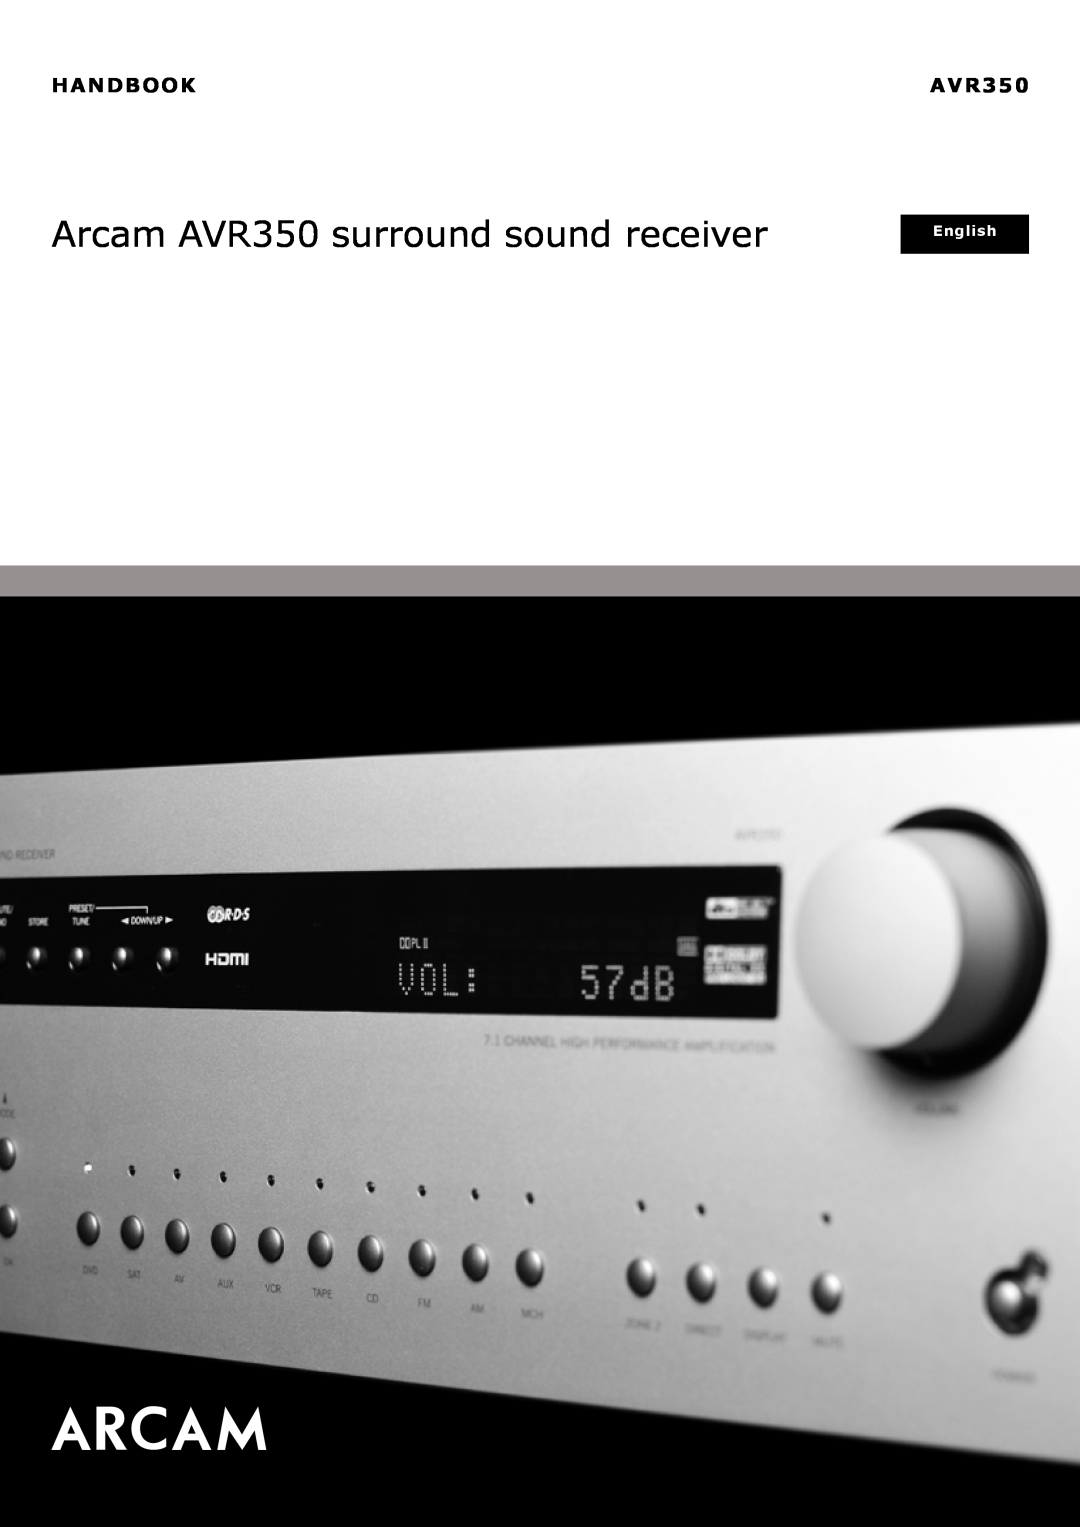 Arcam manual Handbook, Arcam AVR350 surround sound receiver, English 